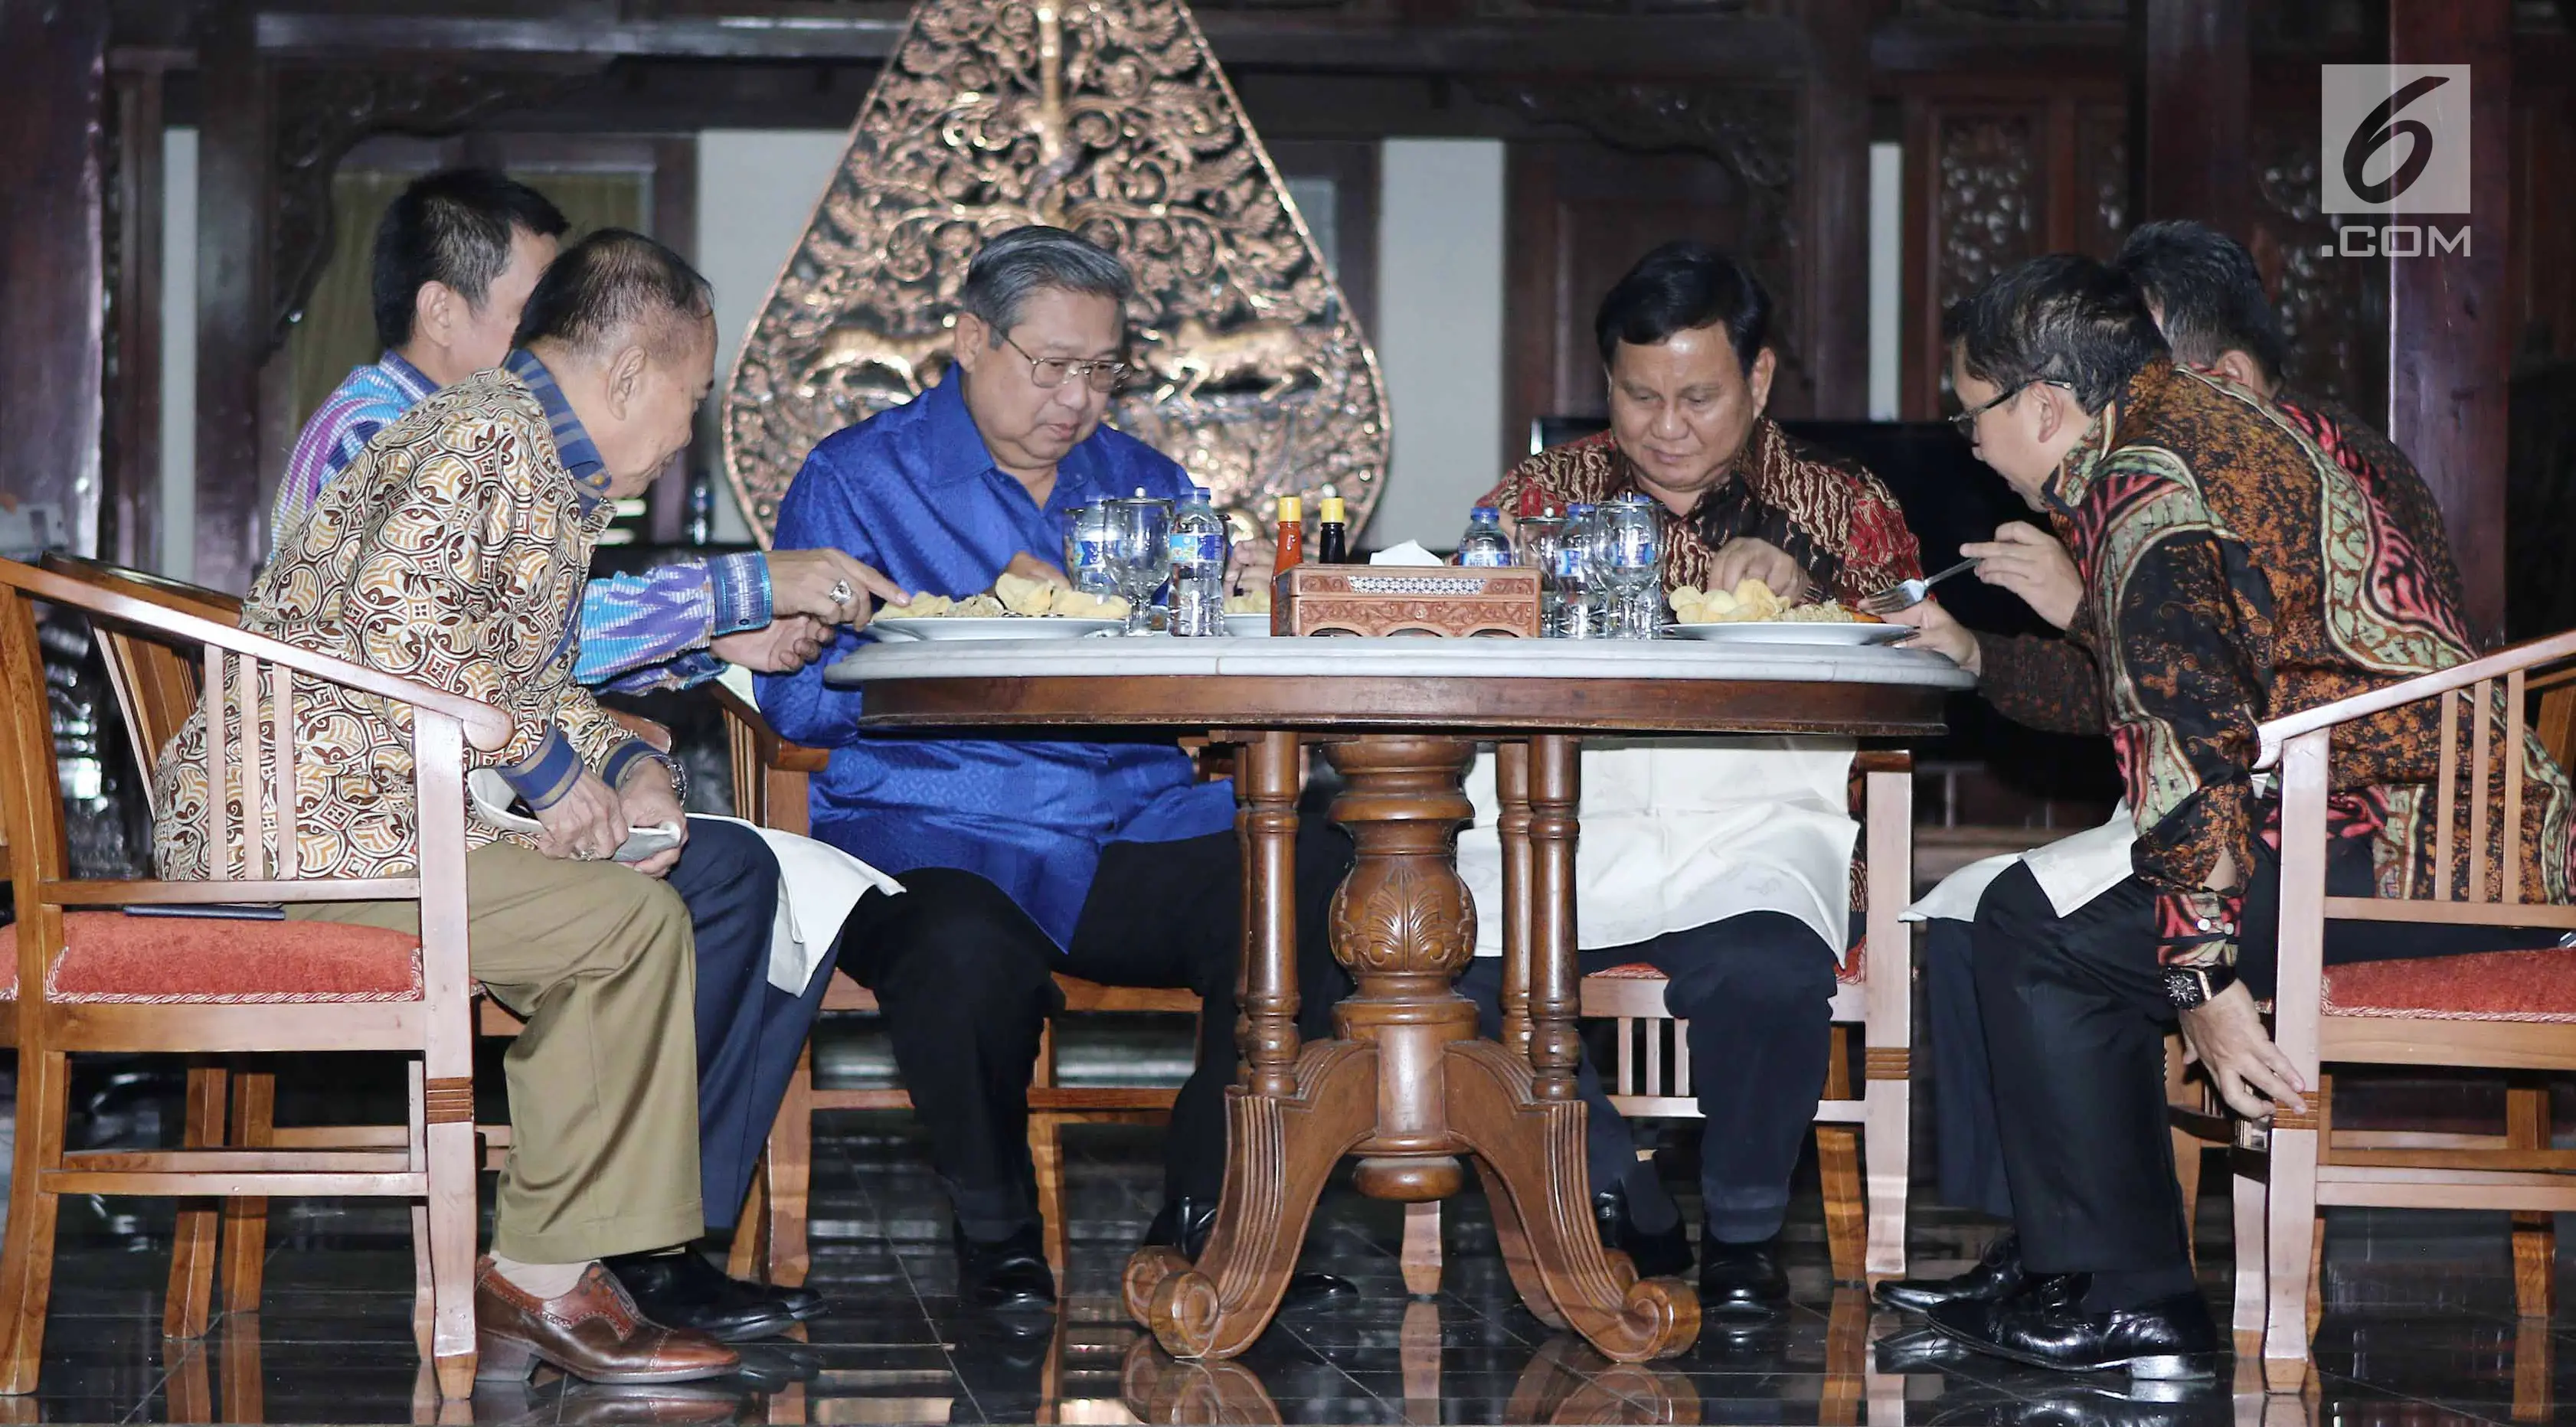 Presiden RI ke 6 Susilo Bambang Yudhoyono, Ketua Umum Gerinda, Prabowo Subianto dan tokoh politik saat menyantap makan malam nasi goreng di kediaman SBY di Cikeas, Bogor Kamis (27/7). (Liputan6.com/Herman Zakharia)